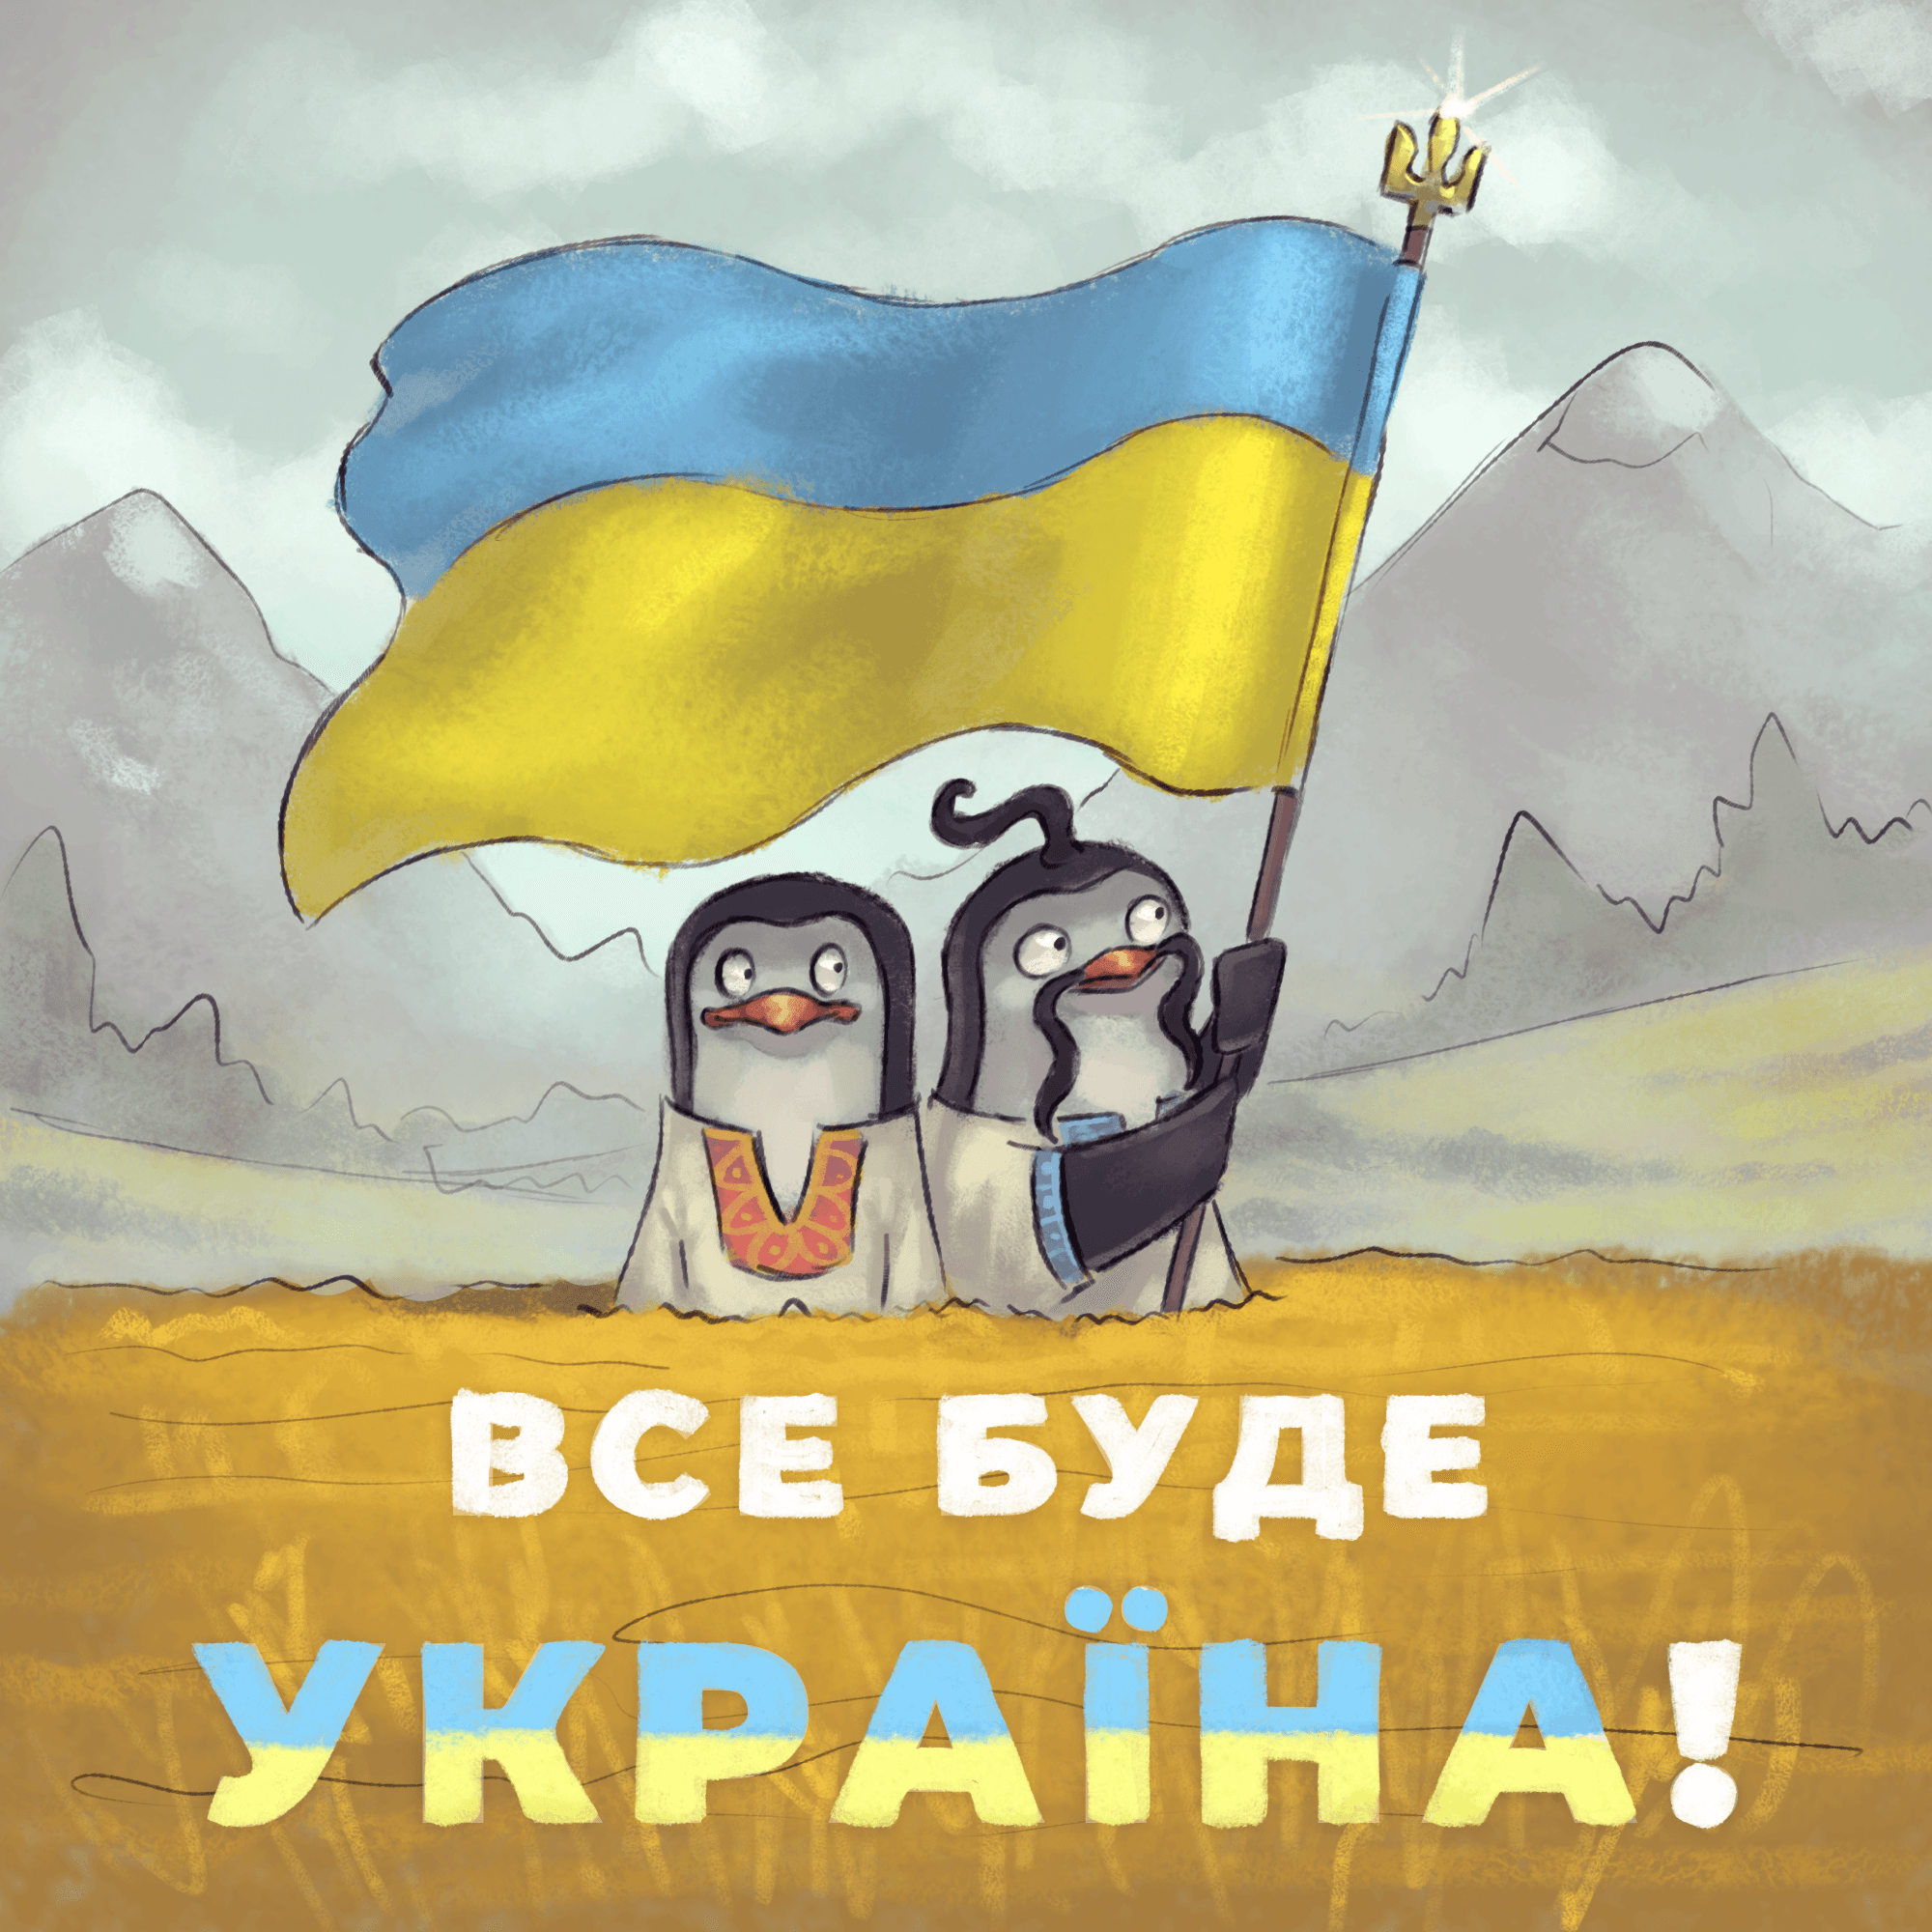 Ukraine independent